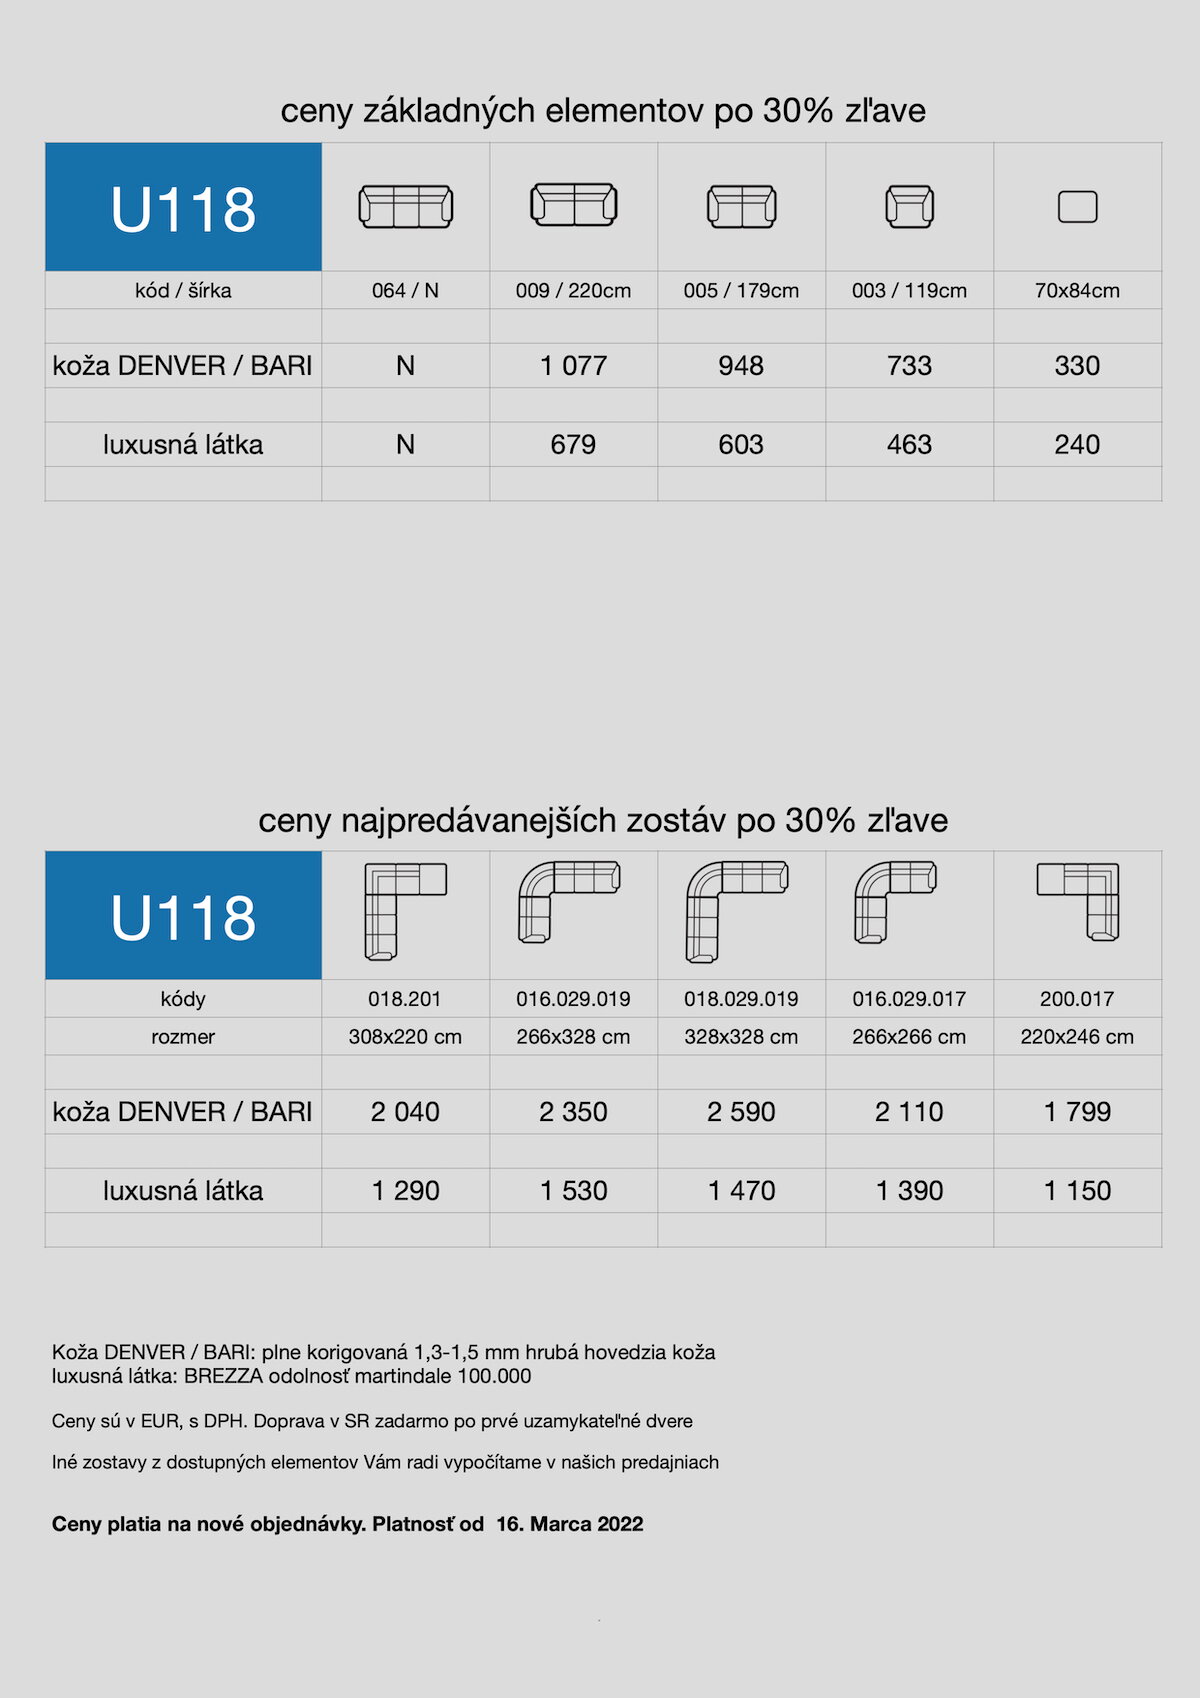 akciový cenník sedačky U118